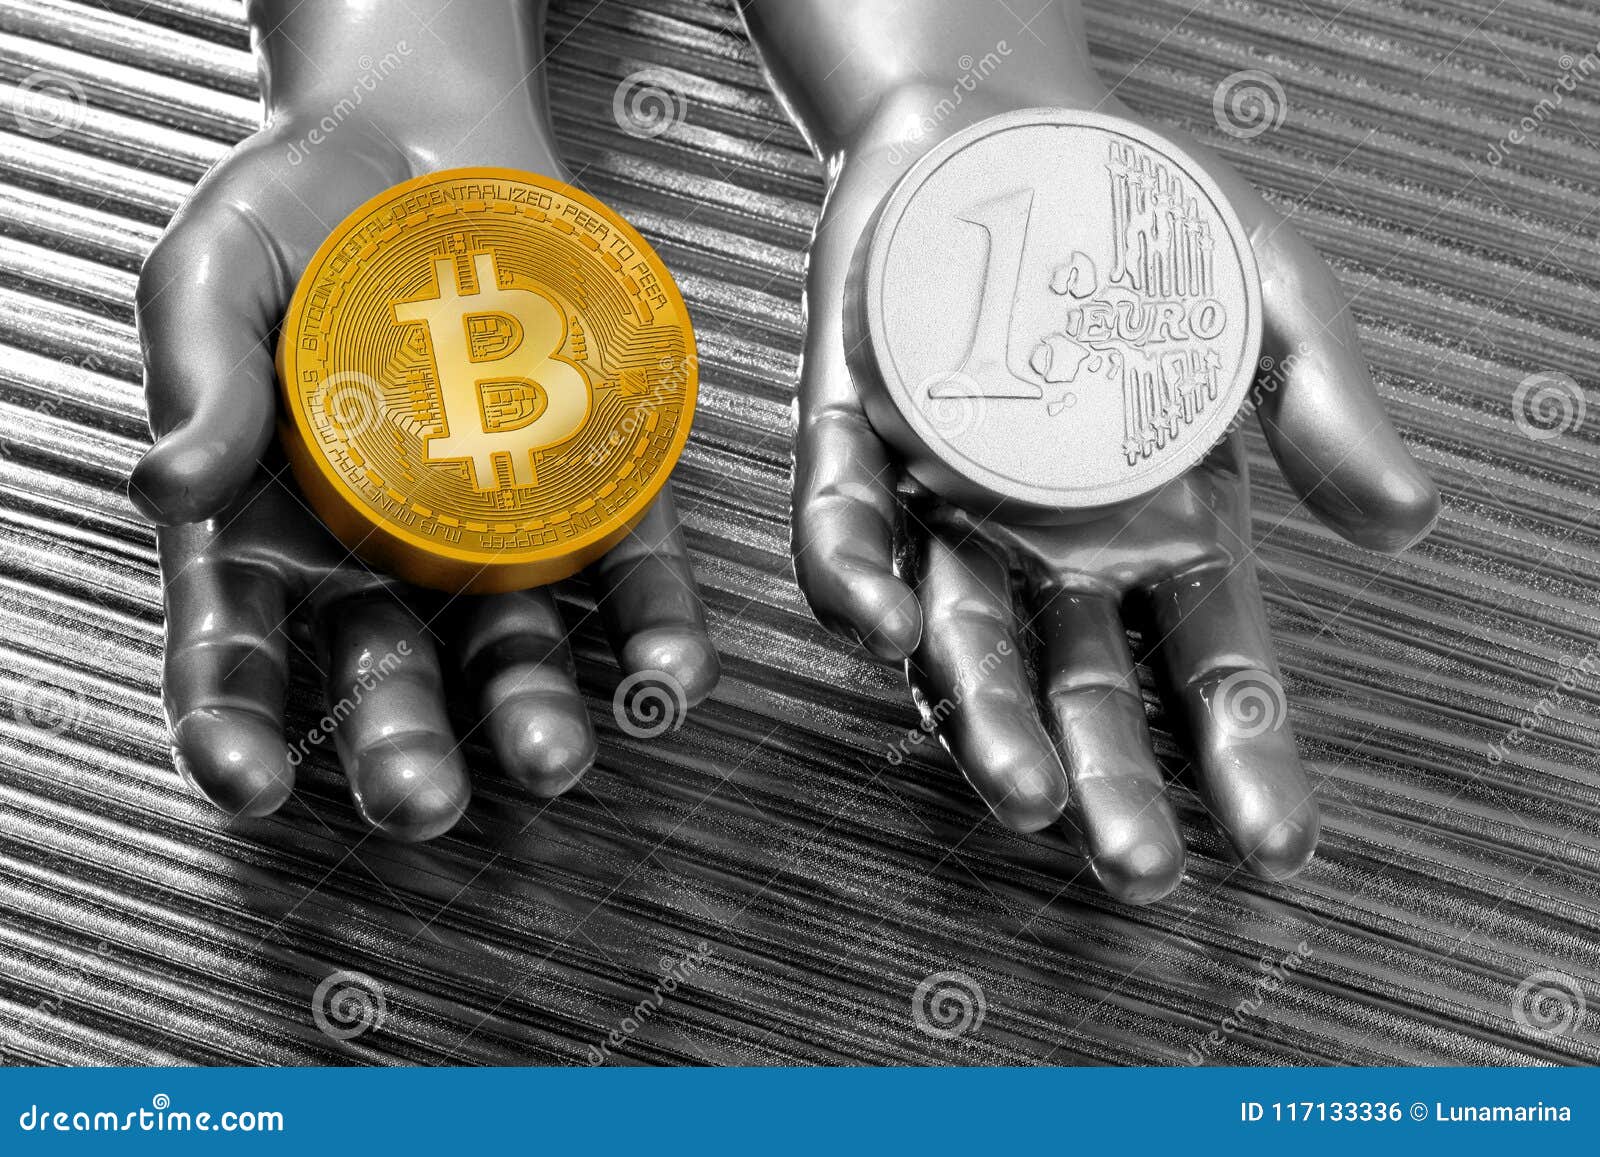 euro coin vs bitcoin